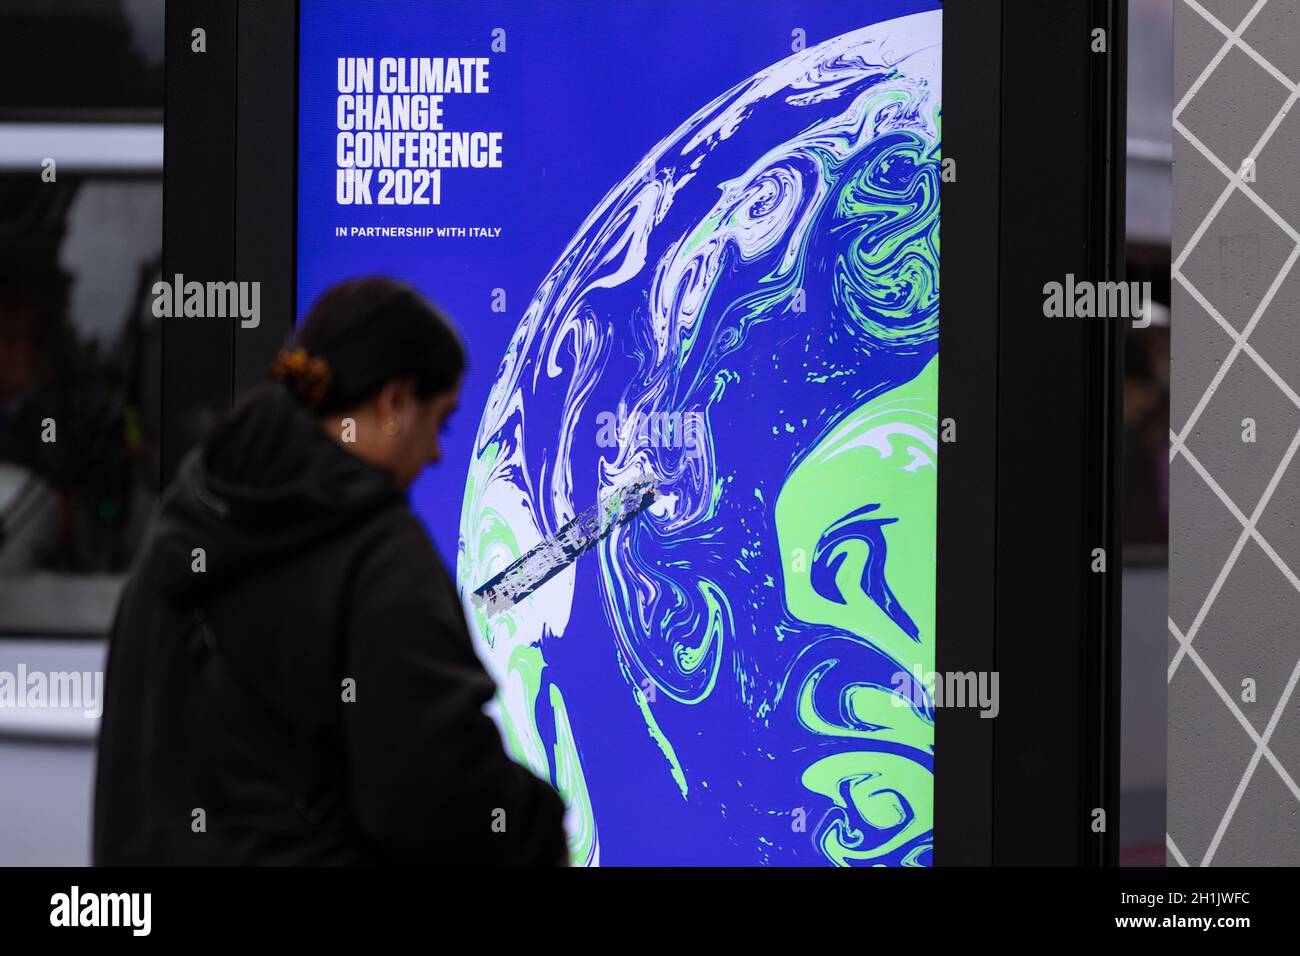 Glasgow, Écosse, Royaume-Uni - 18 octobre 2021 - Glasgow continue de se préparer à la COP26.Photo : Conférence des Nations Unies sur les changements climatiques, panneau UK 2021 à Glasgow Banque D'Images